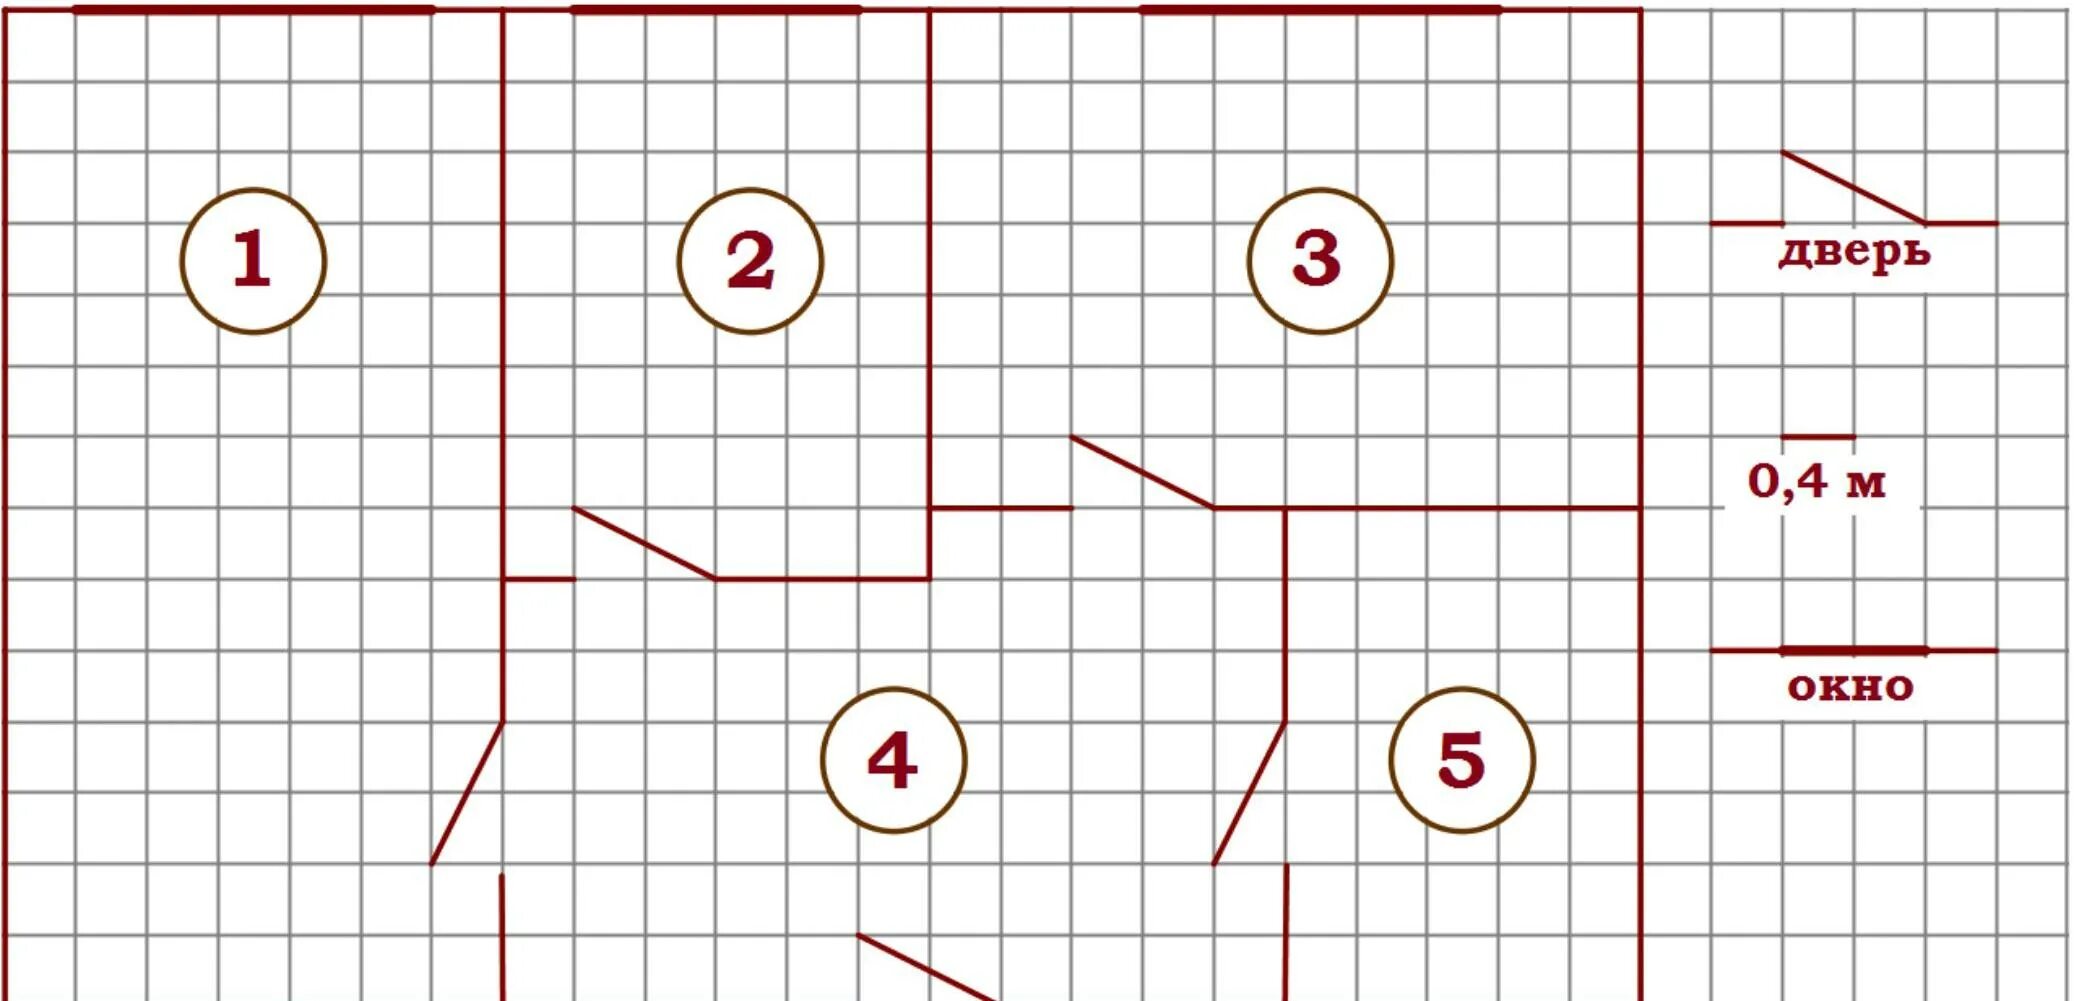 Найдите площадь дома в квадратных метрах огэ. Найти площадь которую занимает кухня ответ дайте в квадратных метрах. Найдите площадь кухни ответ дайте в квадратных метрах. Ответ дайте в квадратных метрах. Как найти площадь ответ в квадратных метрах.